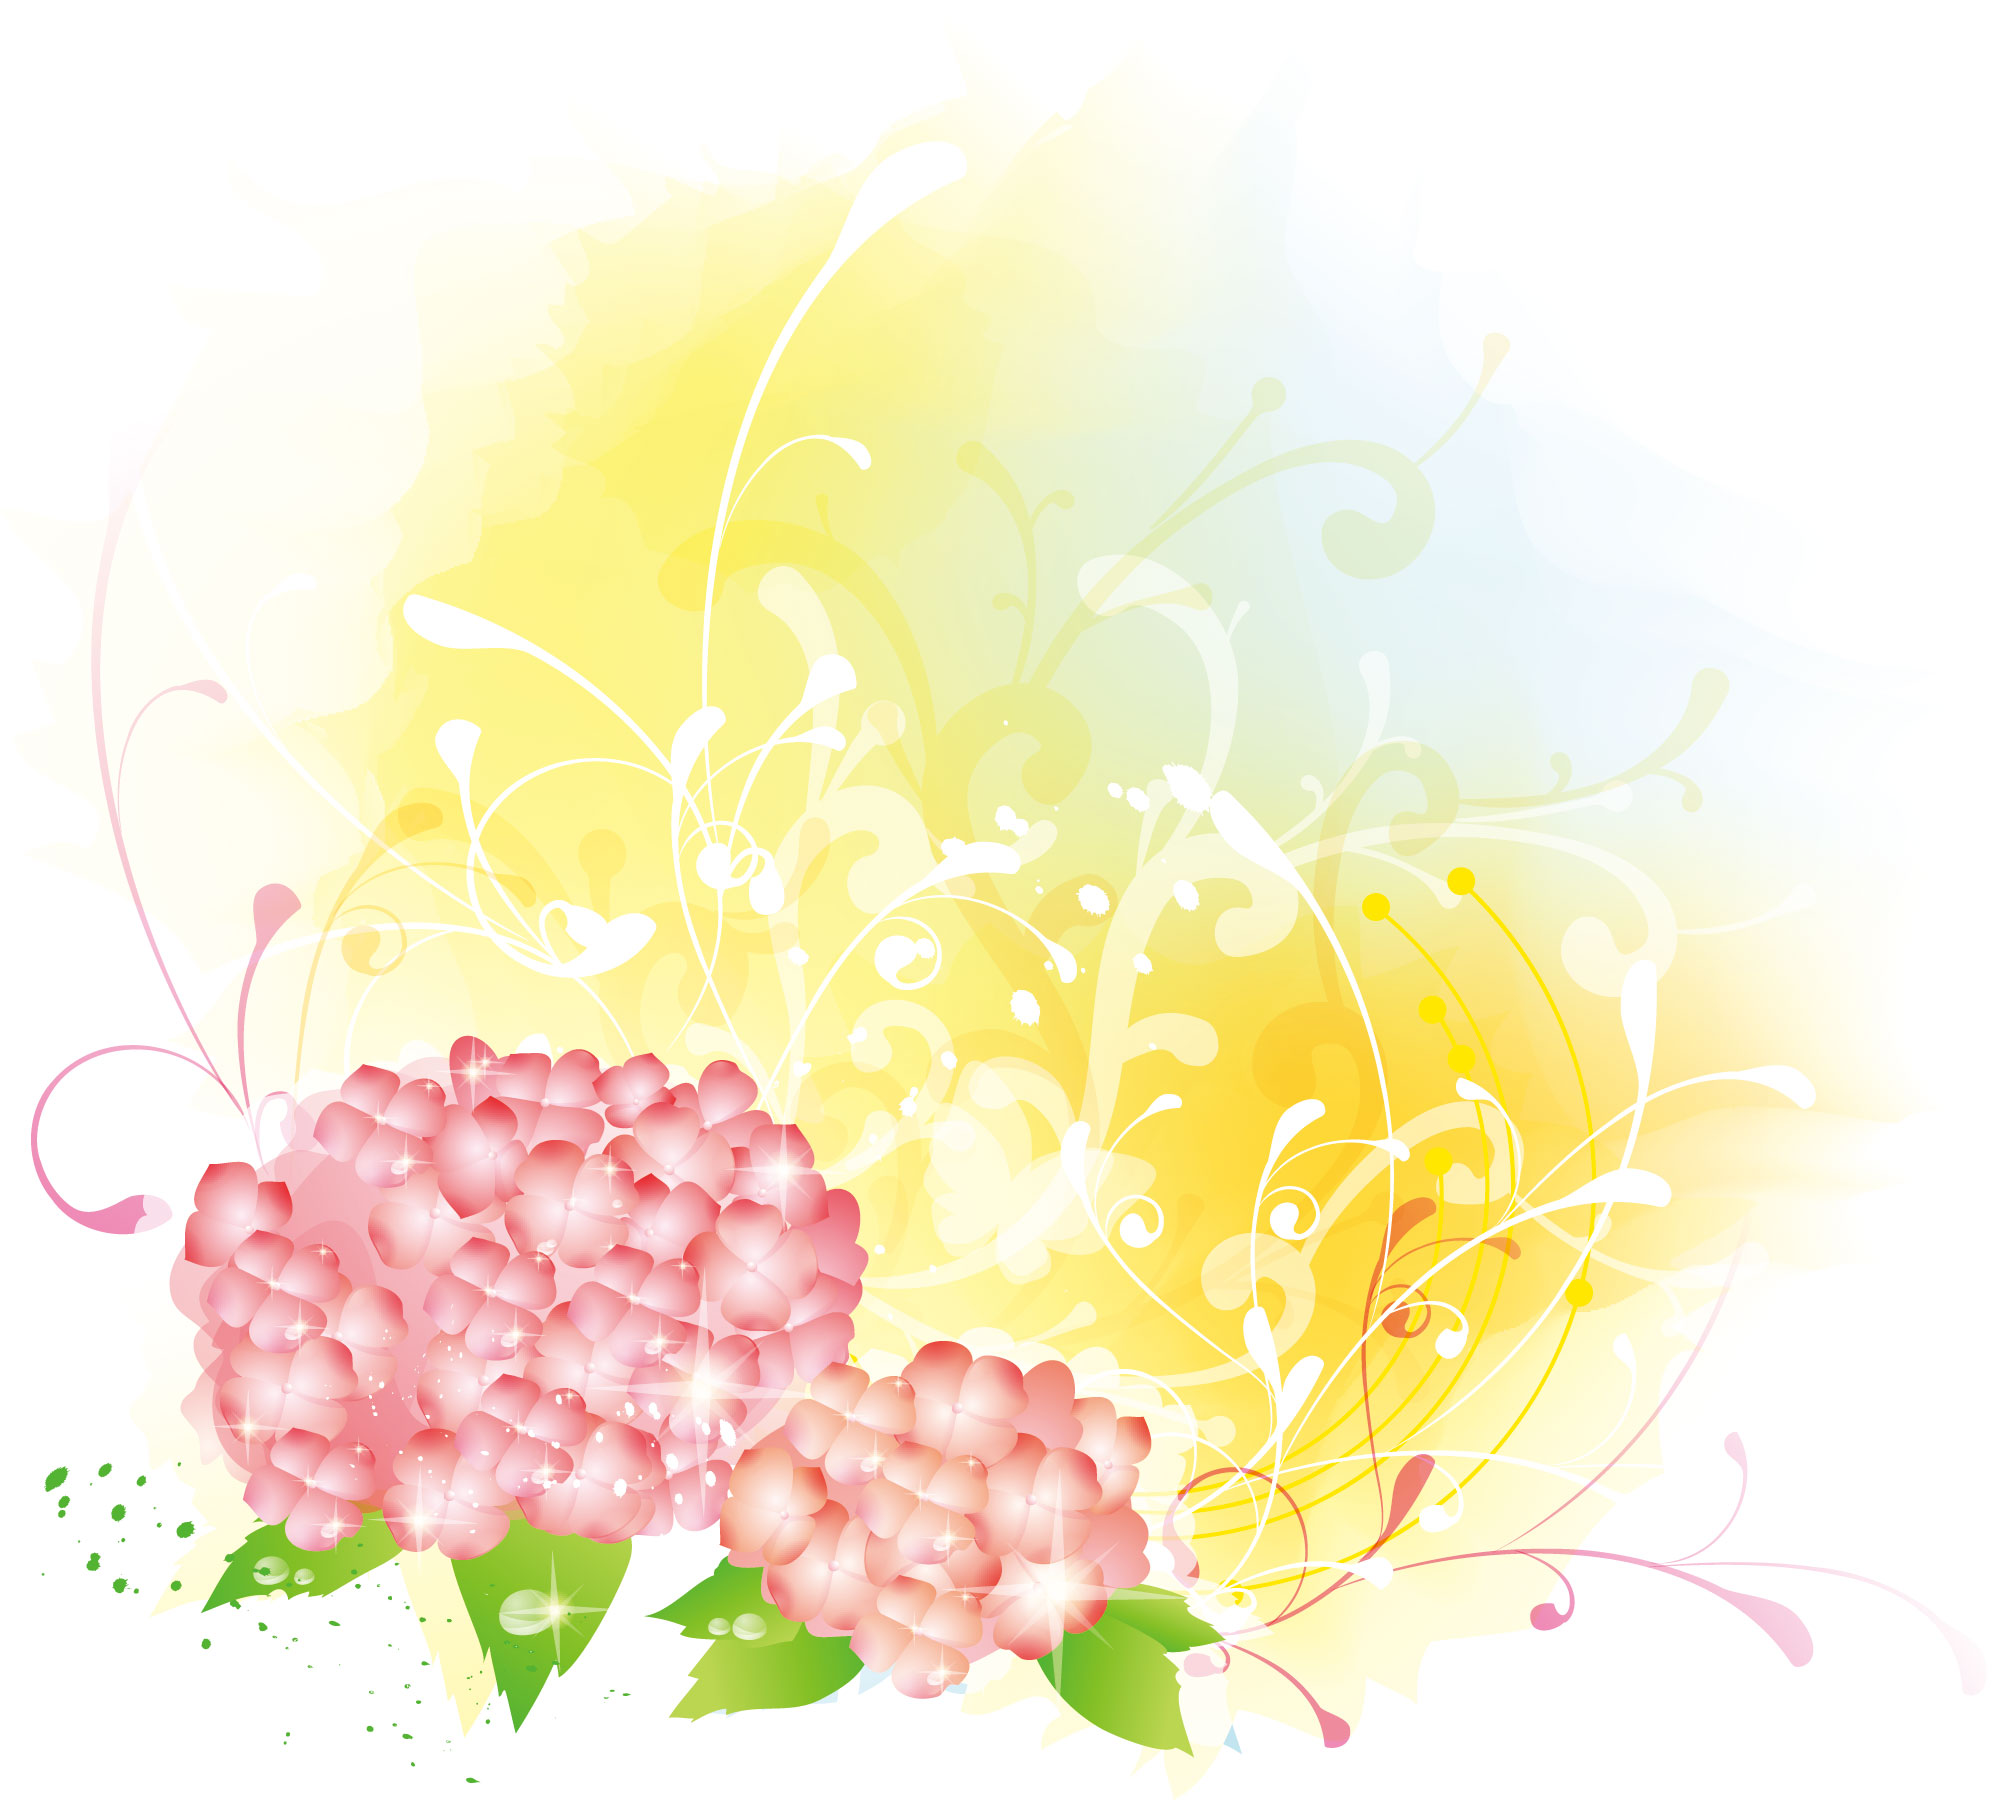 花の壁紙 背景のイラスト 画像no 010 壁紙 淡い色彩 水彩画風3 無料のフリー素材集 百花繚乱